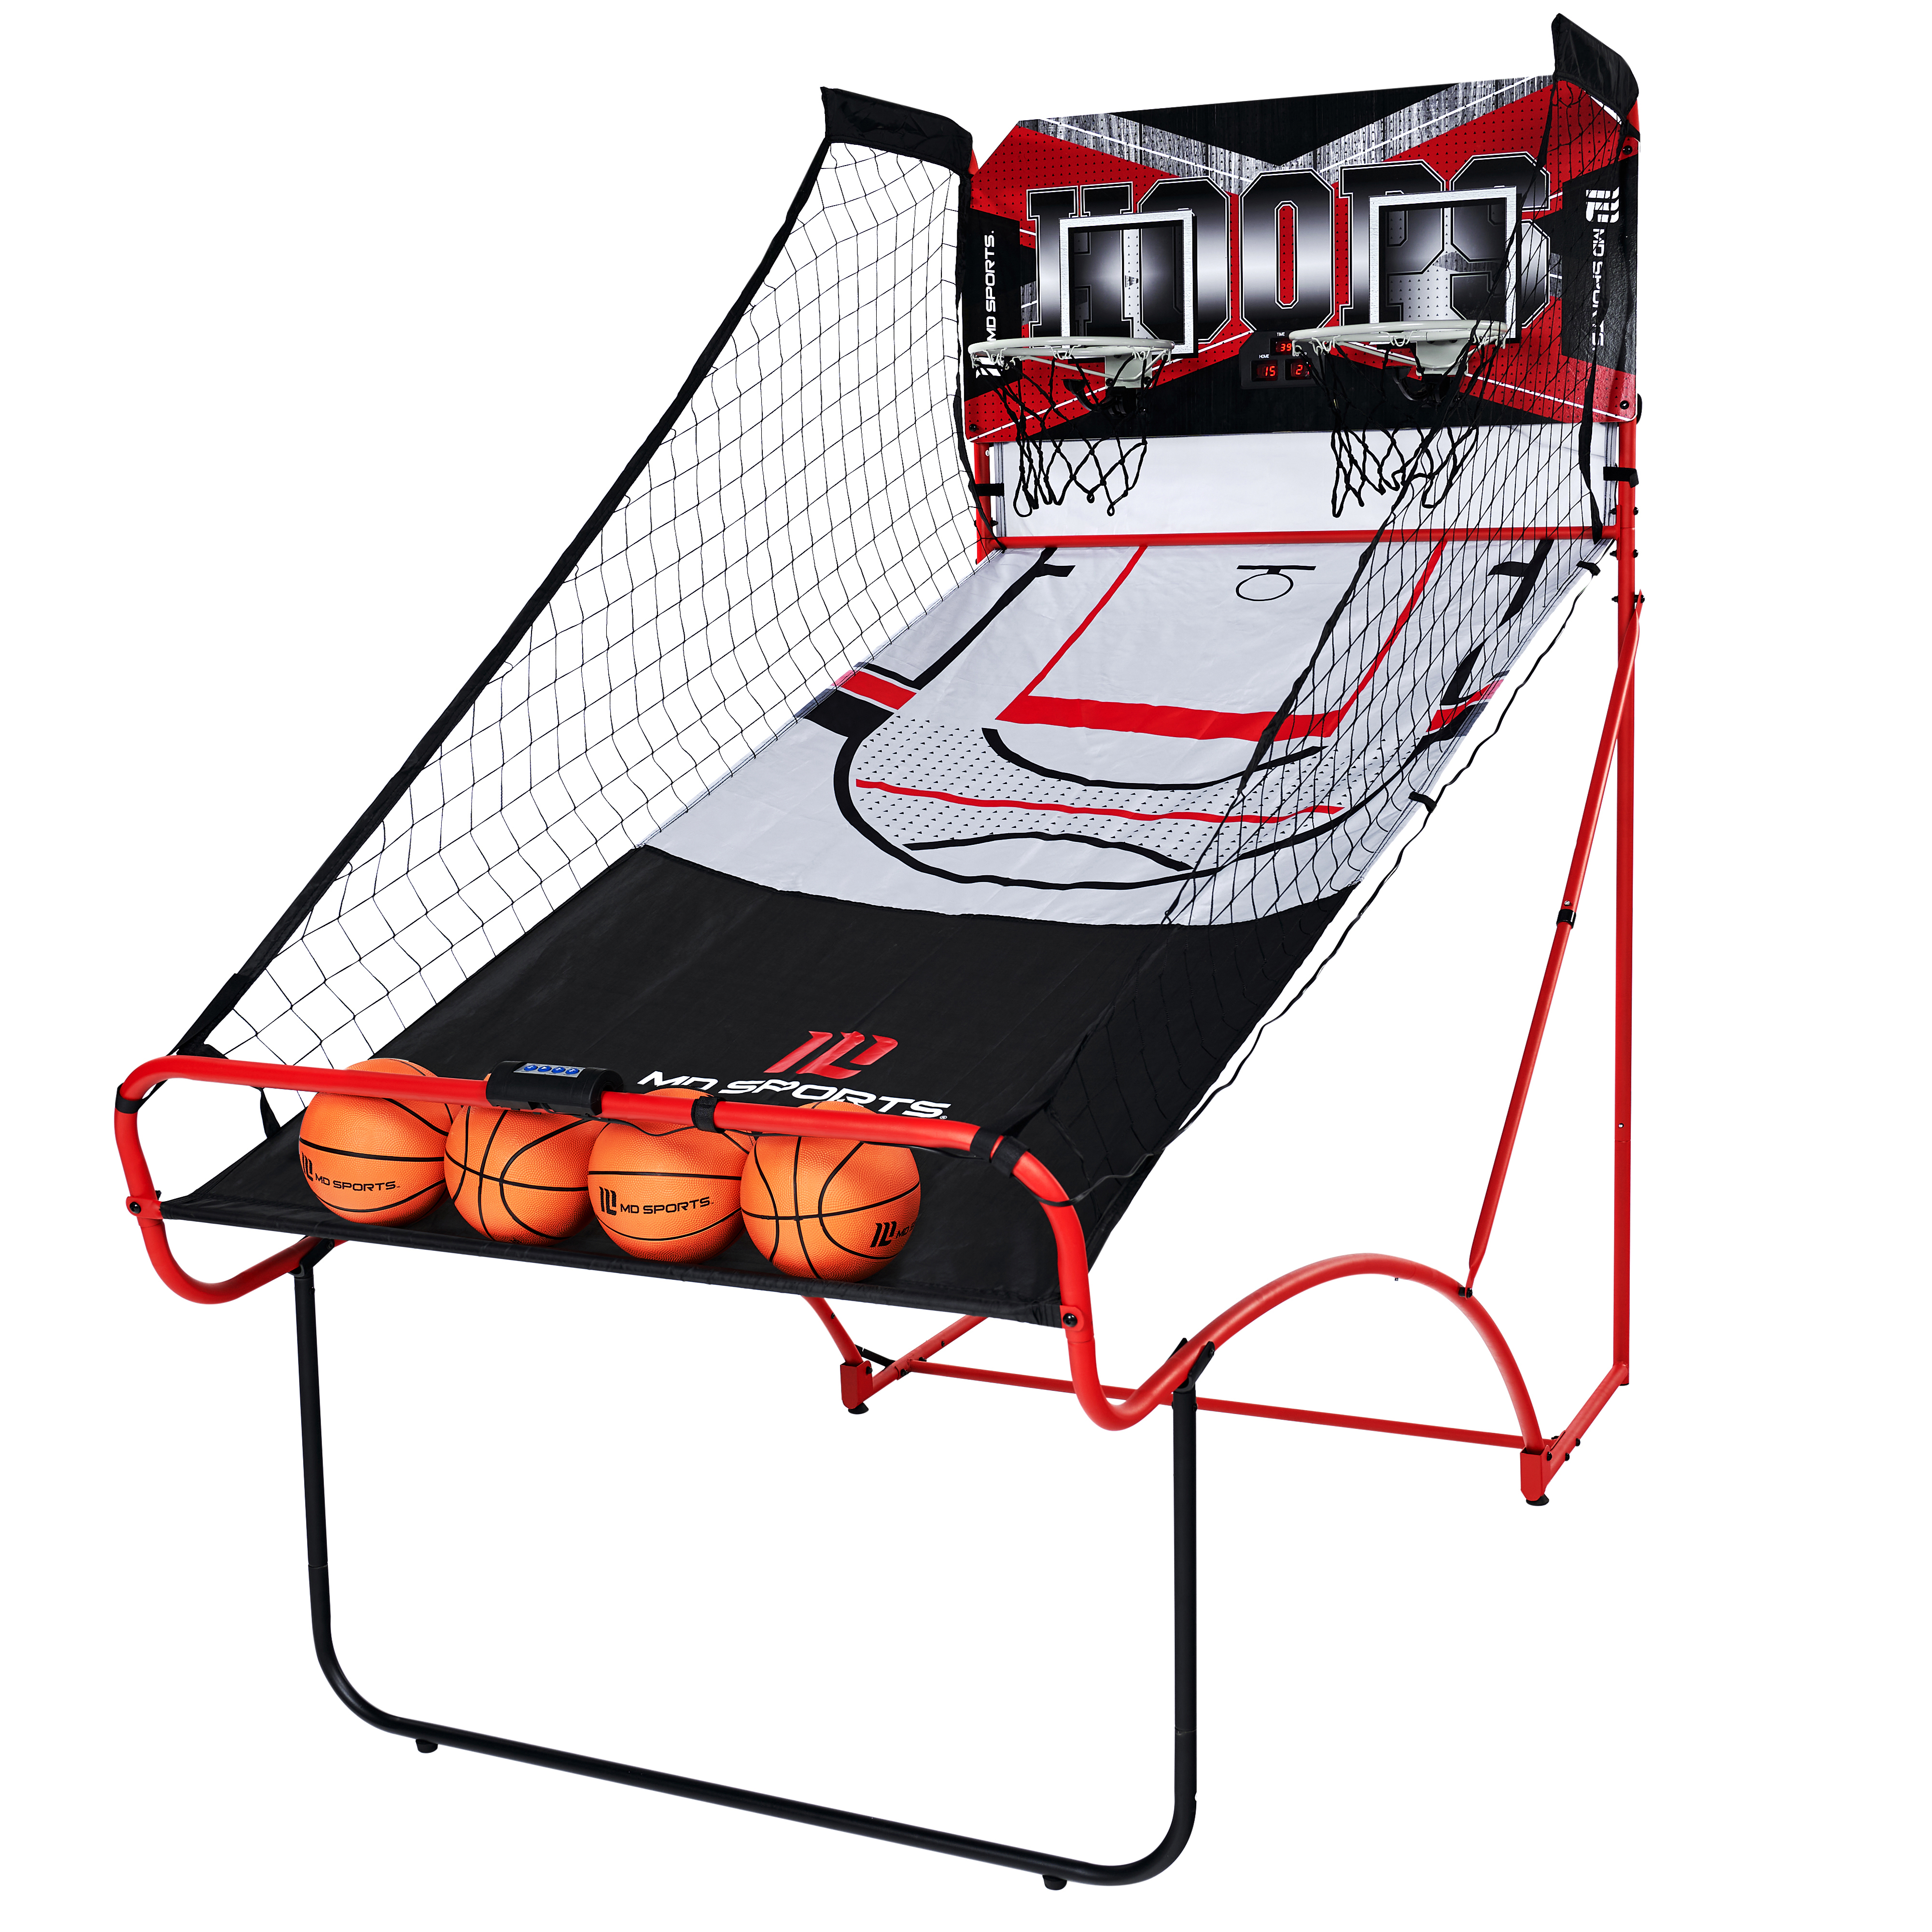 MD Sports EZ Fold Indoor Dual Shot 81" Arcade Basketball Game, LED Scorer, Black/Red - image 1 of 9